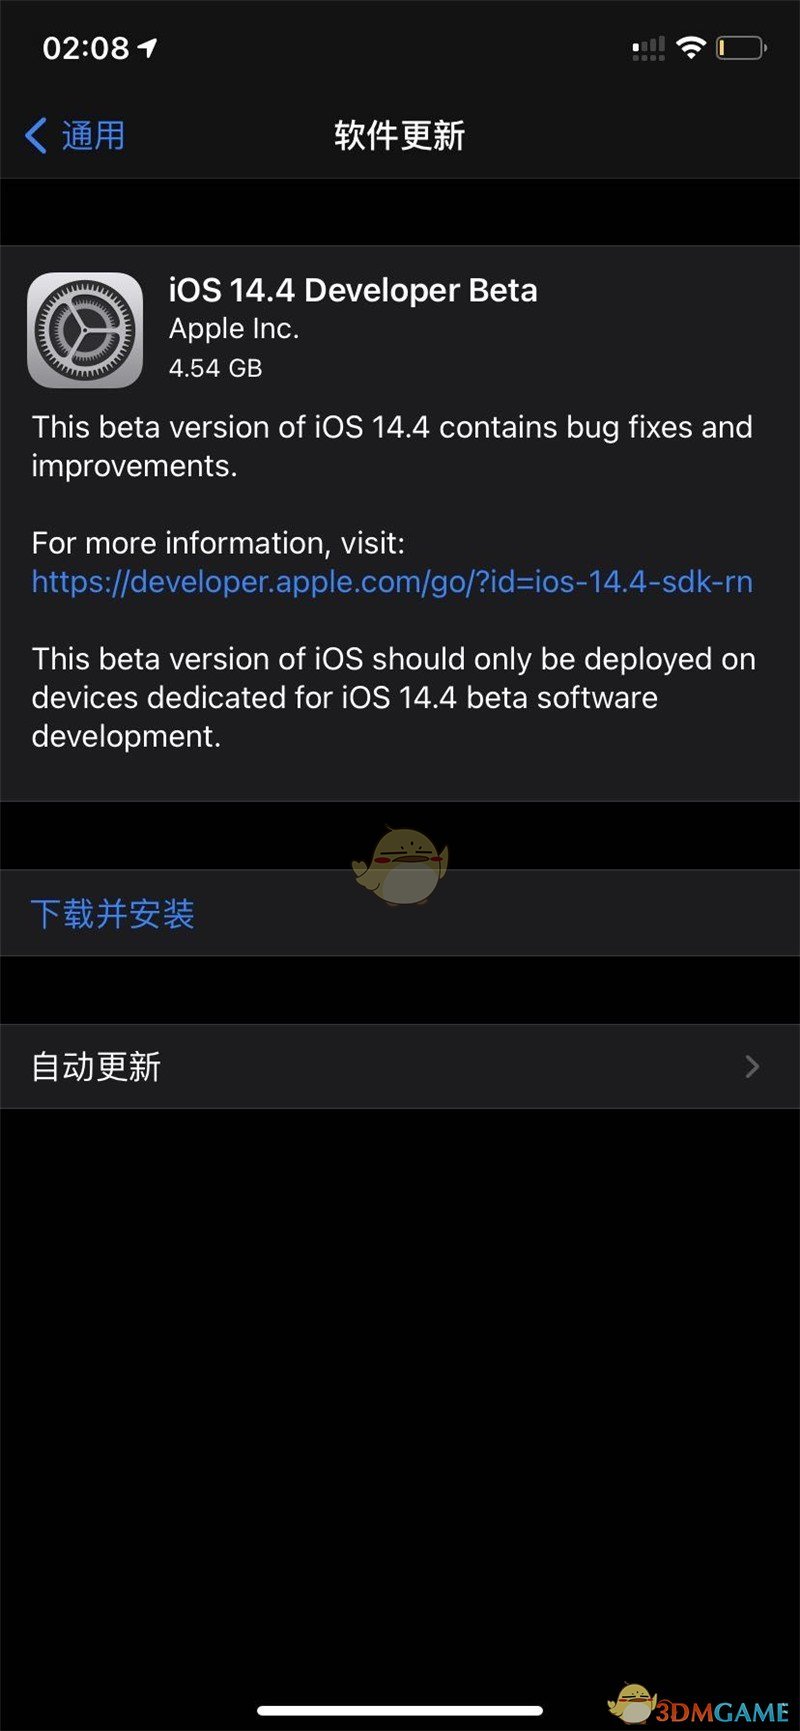 iOS14.4Beta1描述文件下载